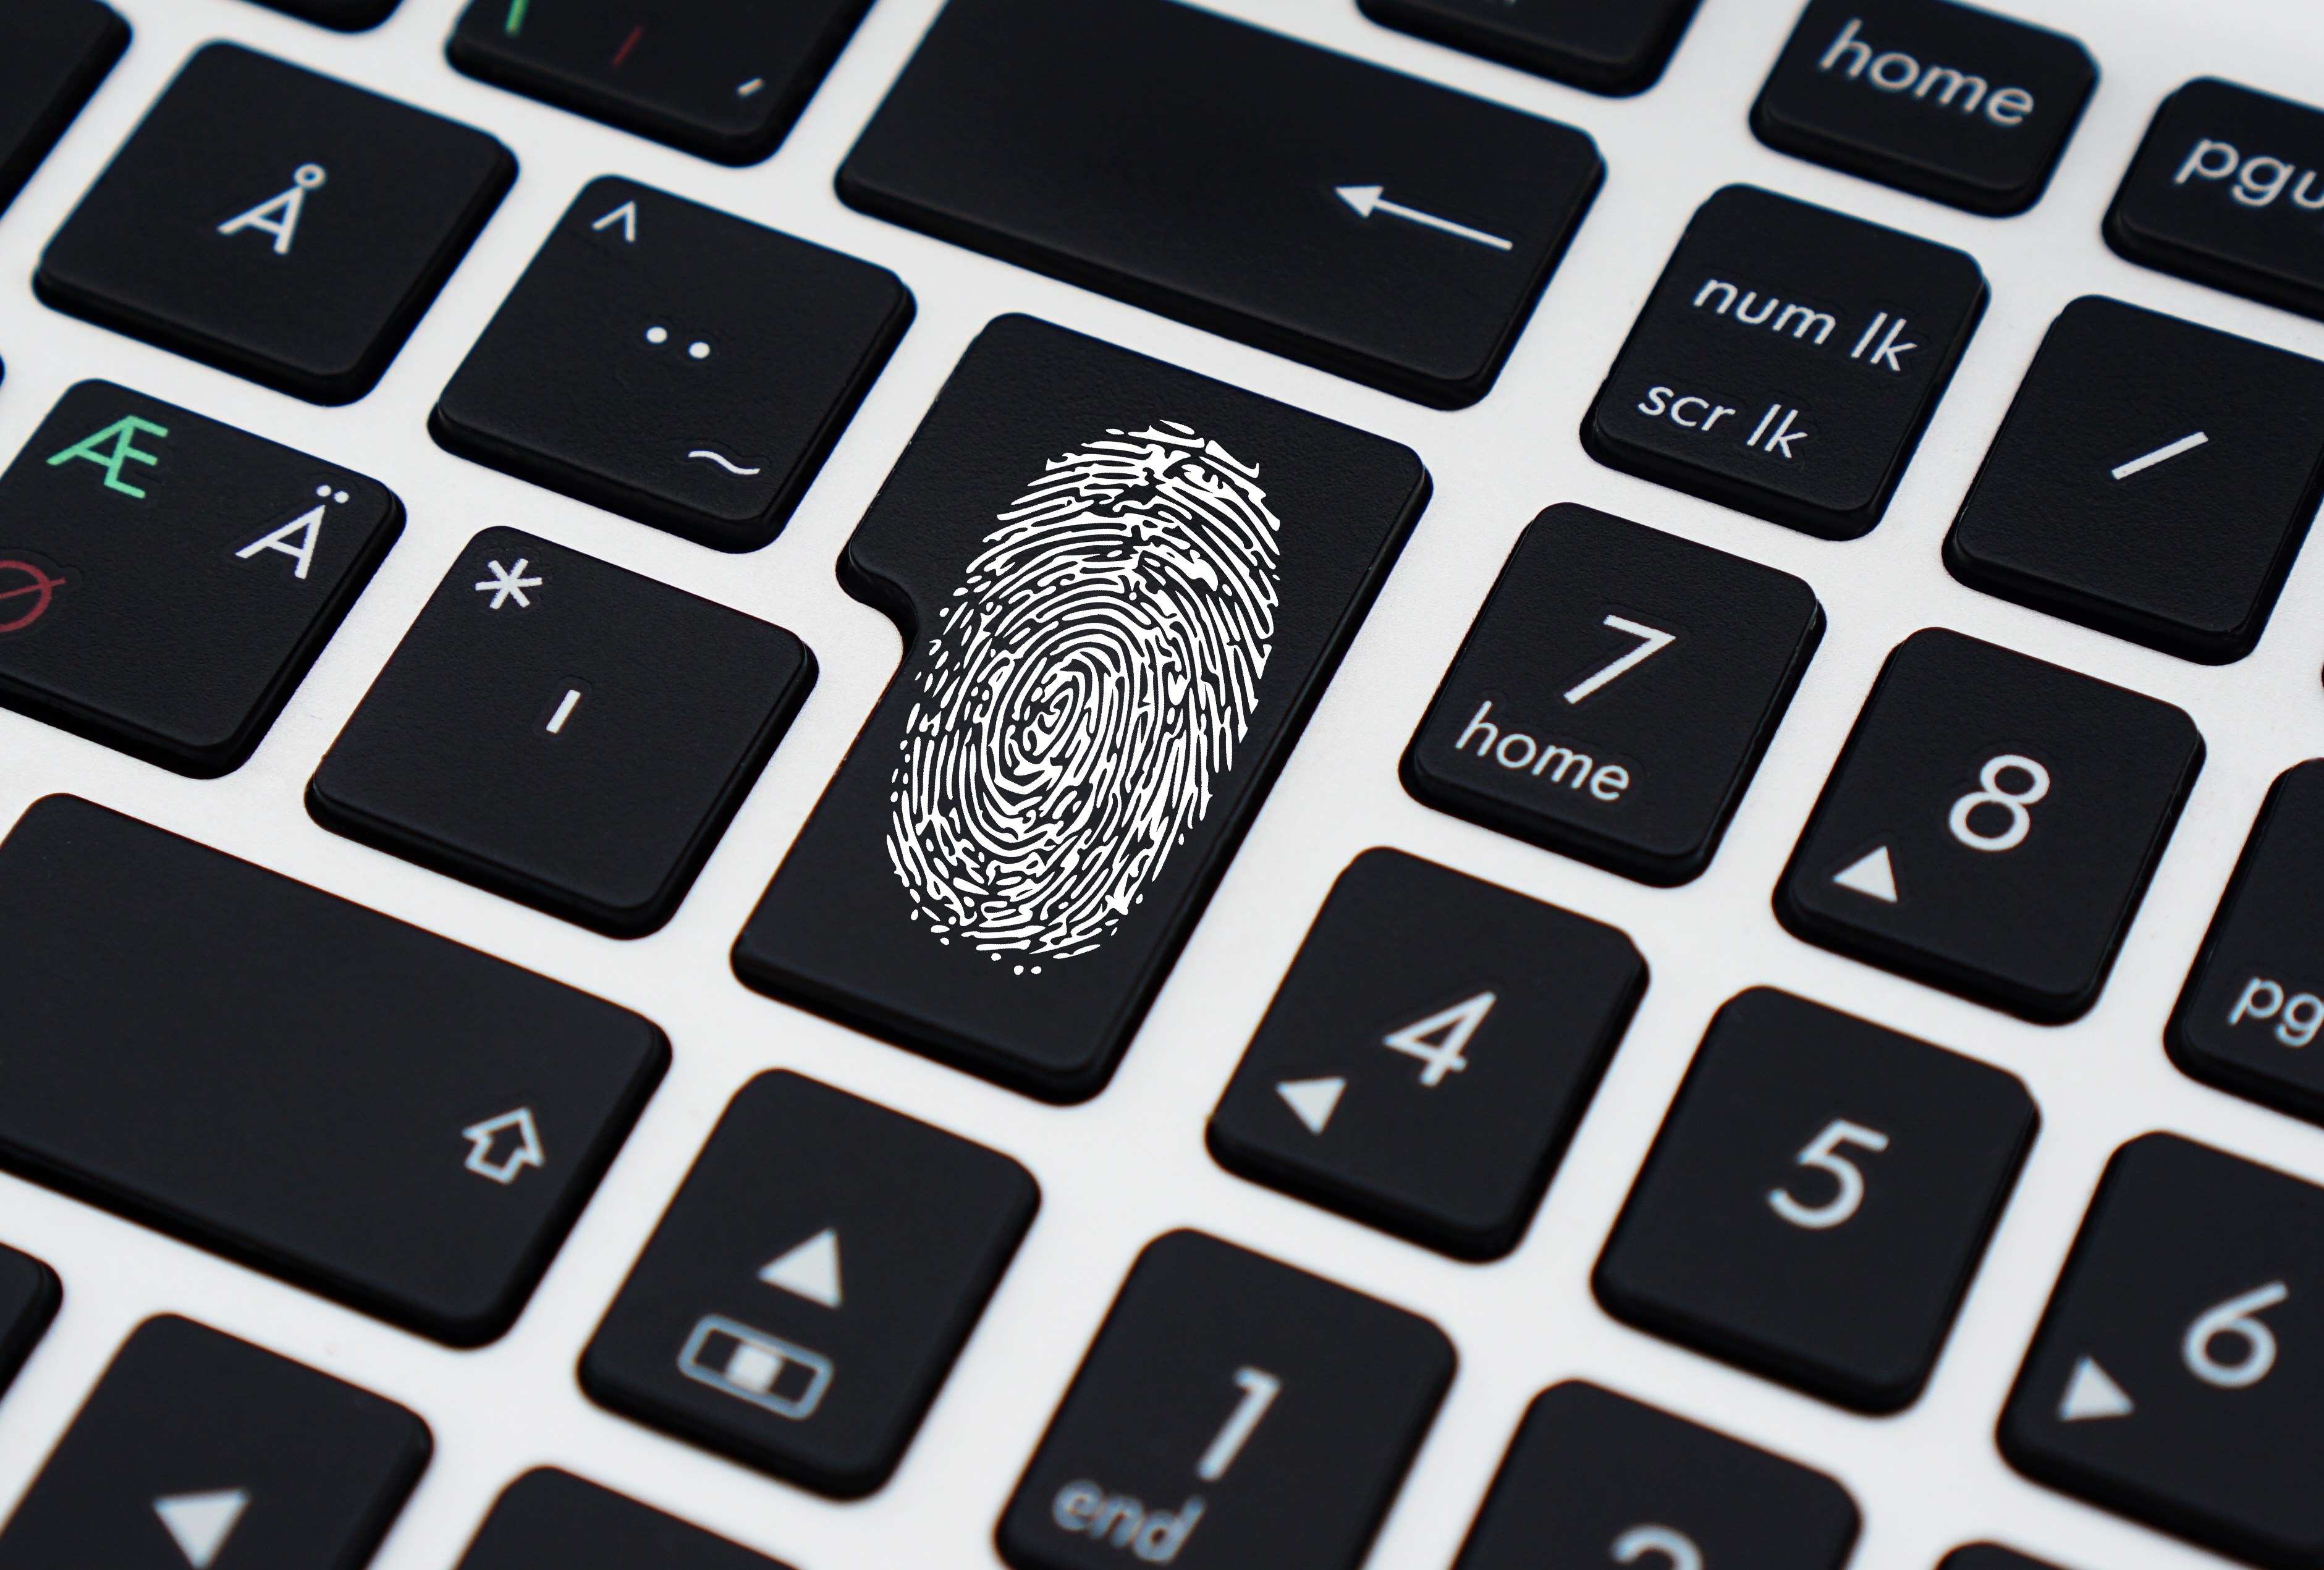 Fingerprint on keyboard